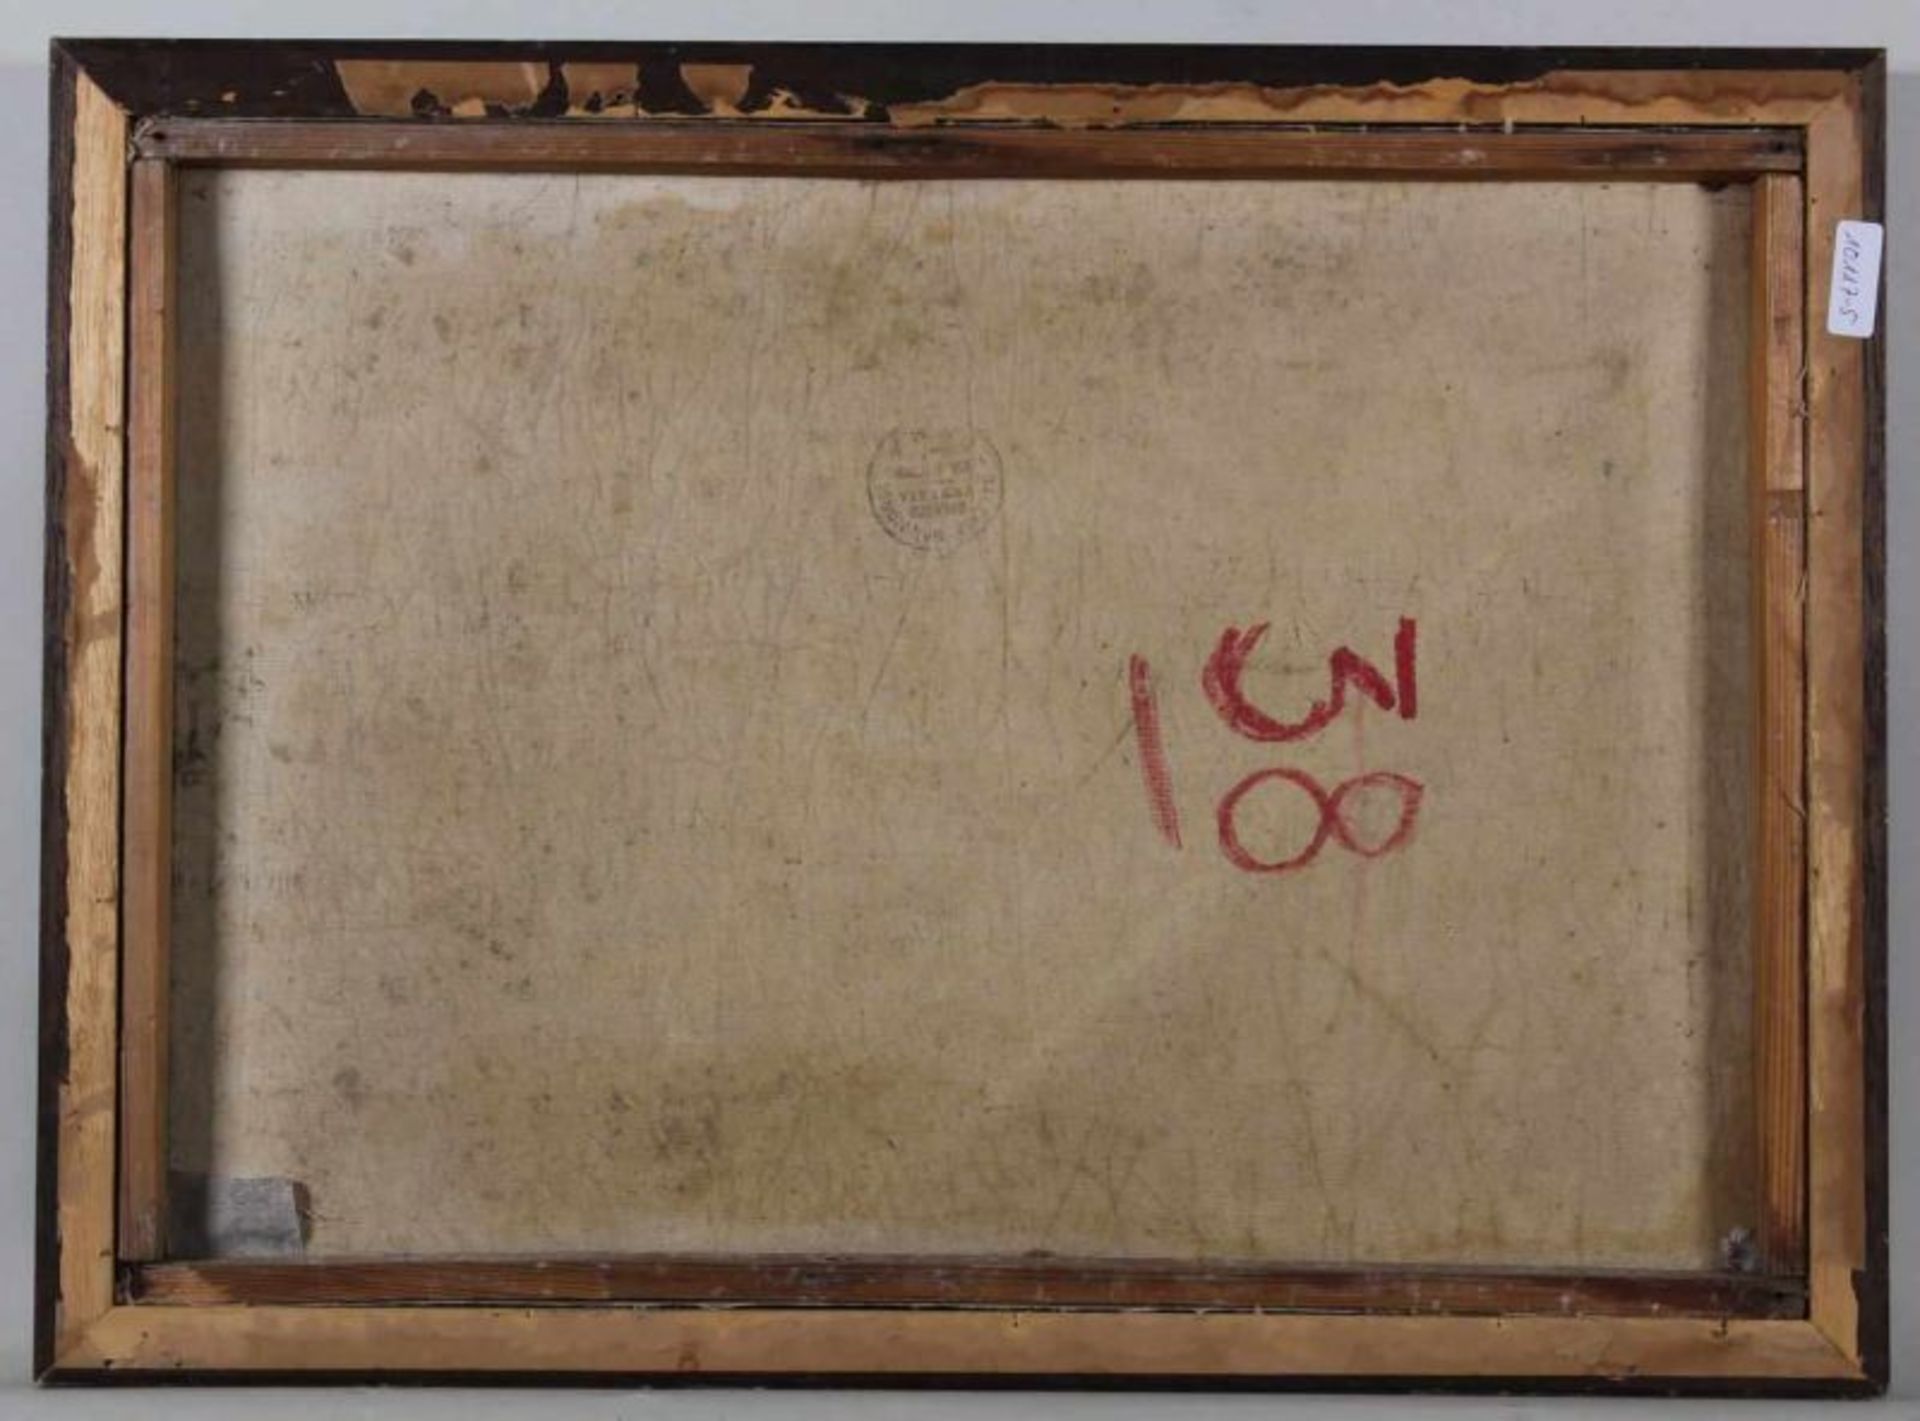 Contencin (tätig um 1920), "Wanderer in norditalienischer Landschaft", Öl auf Leinwand, signiert - Image 4 of 4